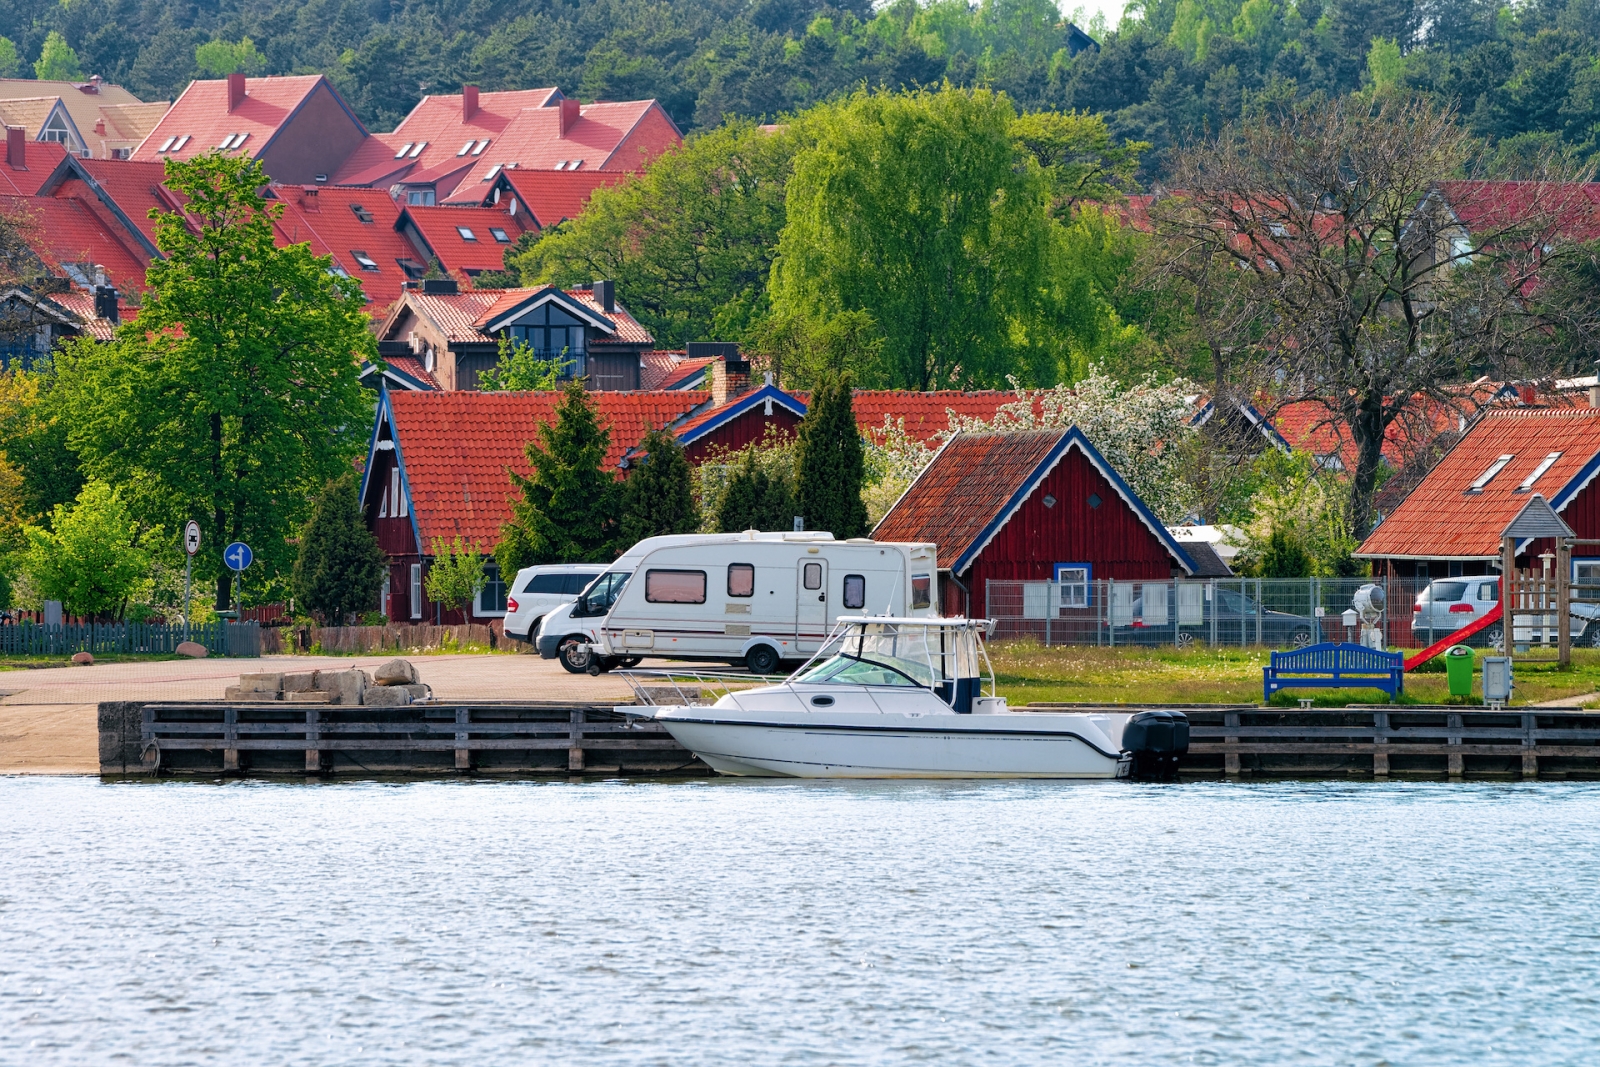 Nida località turistica Lituania Curonian Spit e Mar Baltico